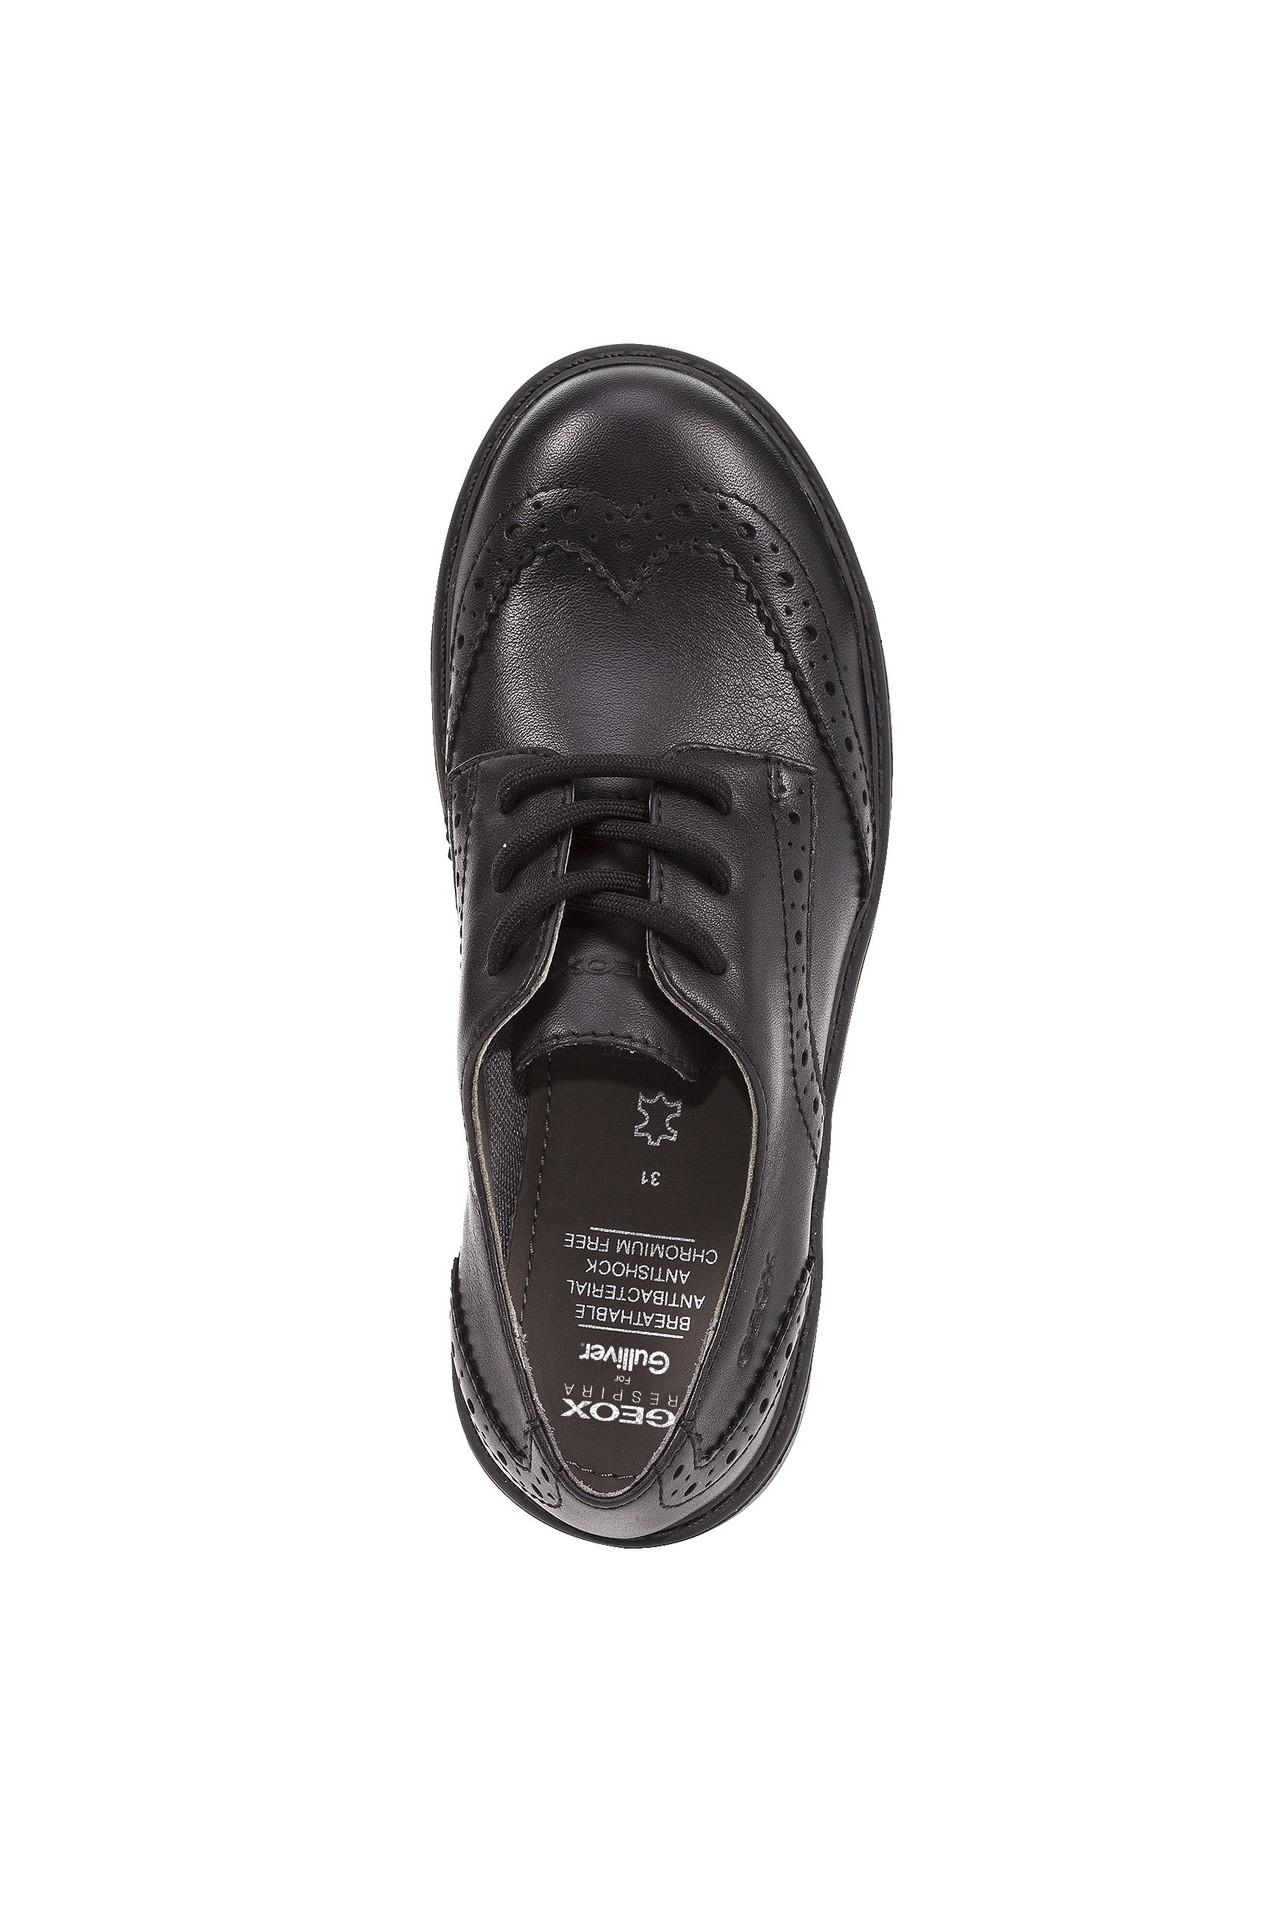 Туфли дерби Geox J6420NL0085C9999, размер 37, цвет черный - фото 5